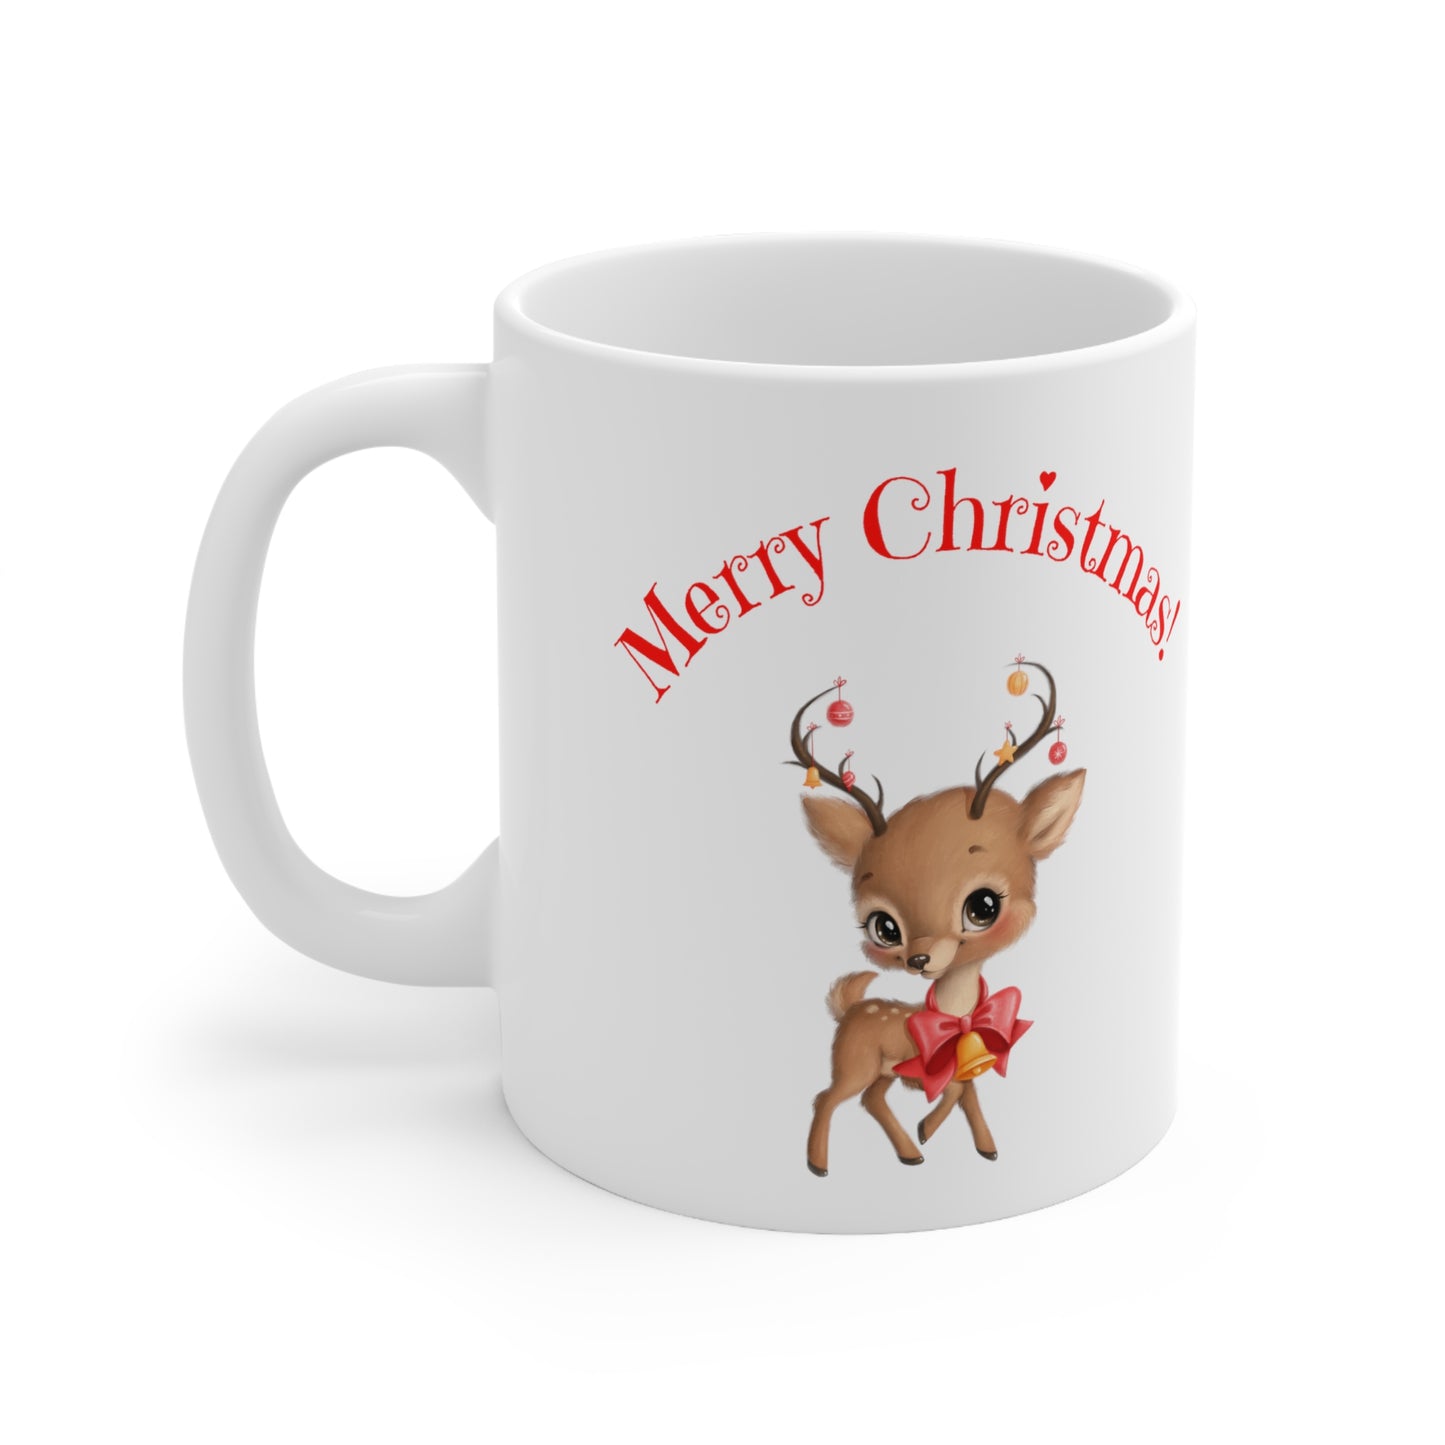 Merry Christmas Wishes Ceramic Mug, 11oz